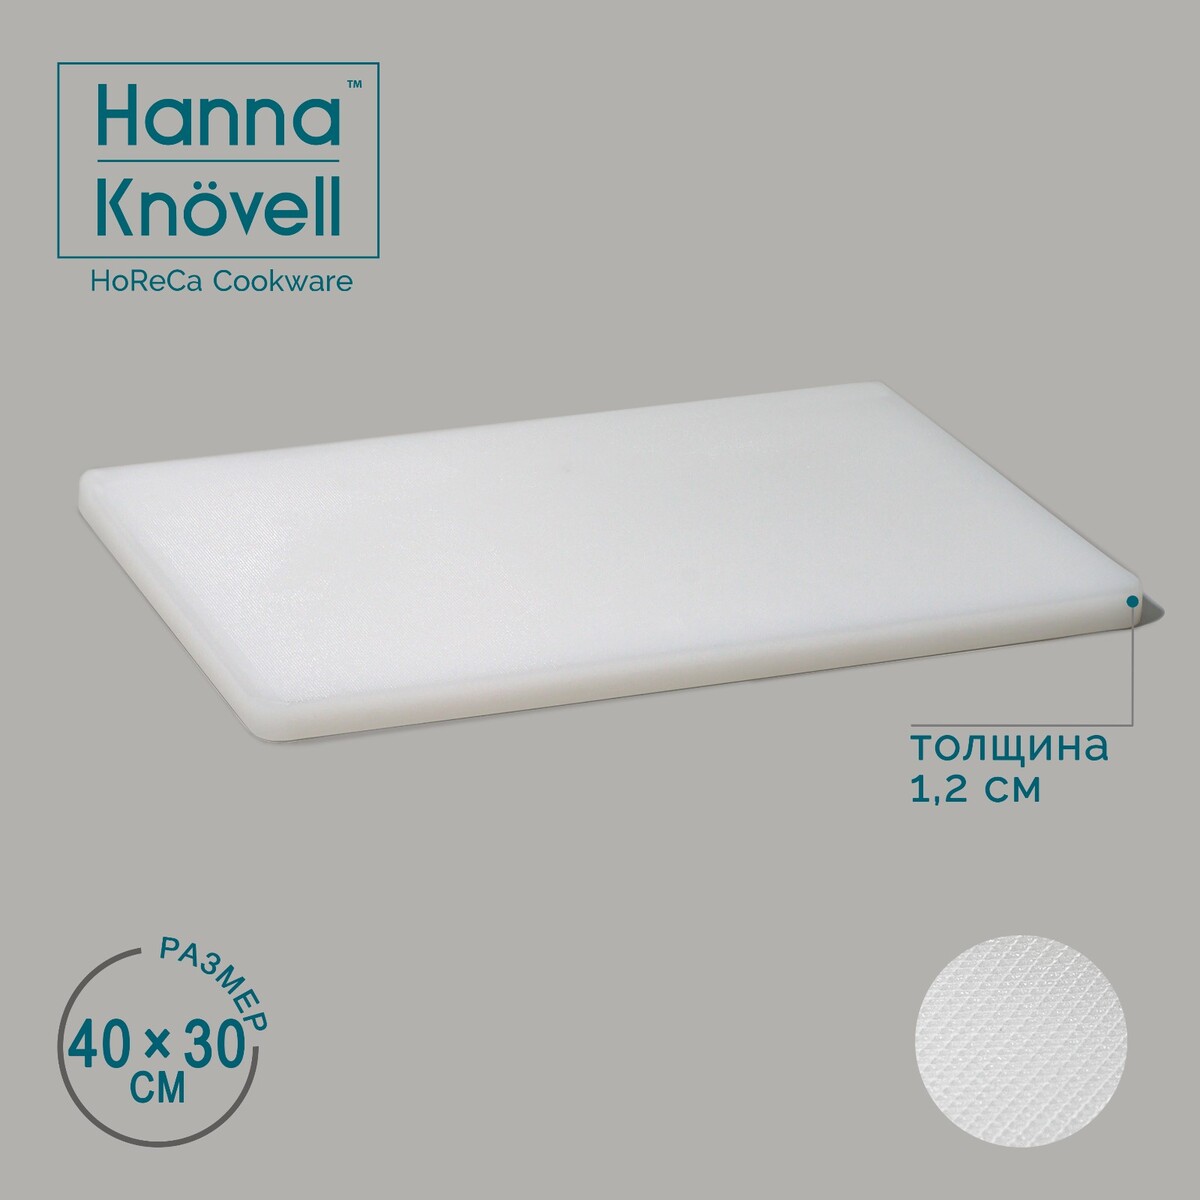 Доска профессиональная разделочная hanna knövell, 40×30×1,2 см, цвет белый доска index текстильная в алюминиевой рамке зеленая 90 х 120 см